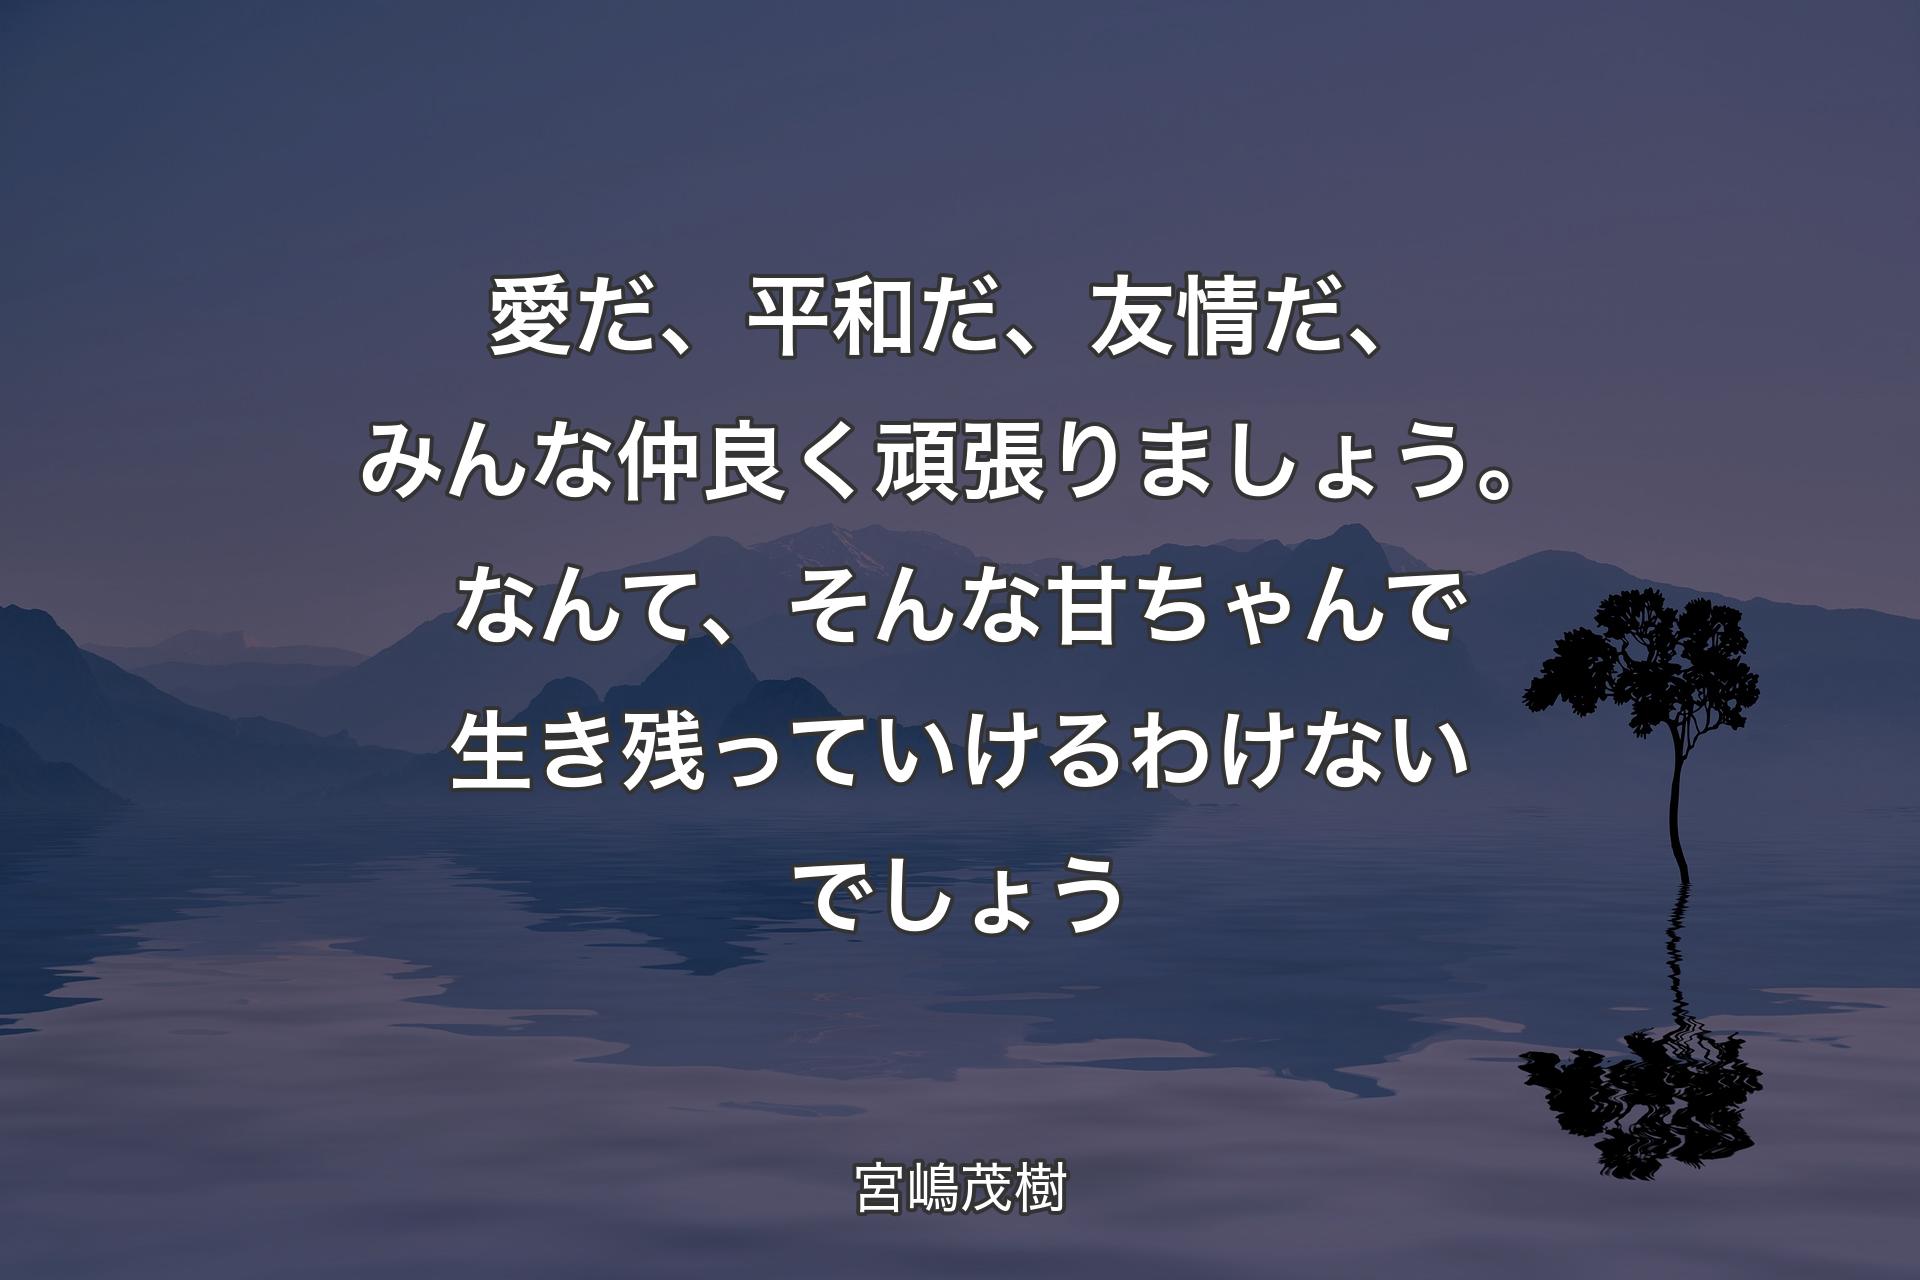 【背景4】愛だ、平和だ、友情だ、みんな仲良く頑張りましょう。なんて、そんな甘ちゃんで生き残っていけるわけないでしょう - 宮嶋茂樹